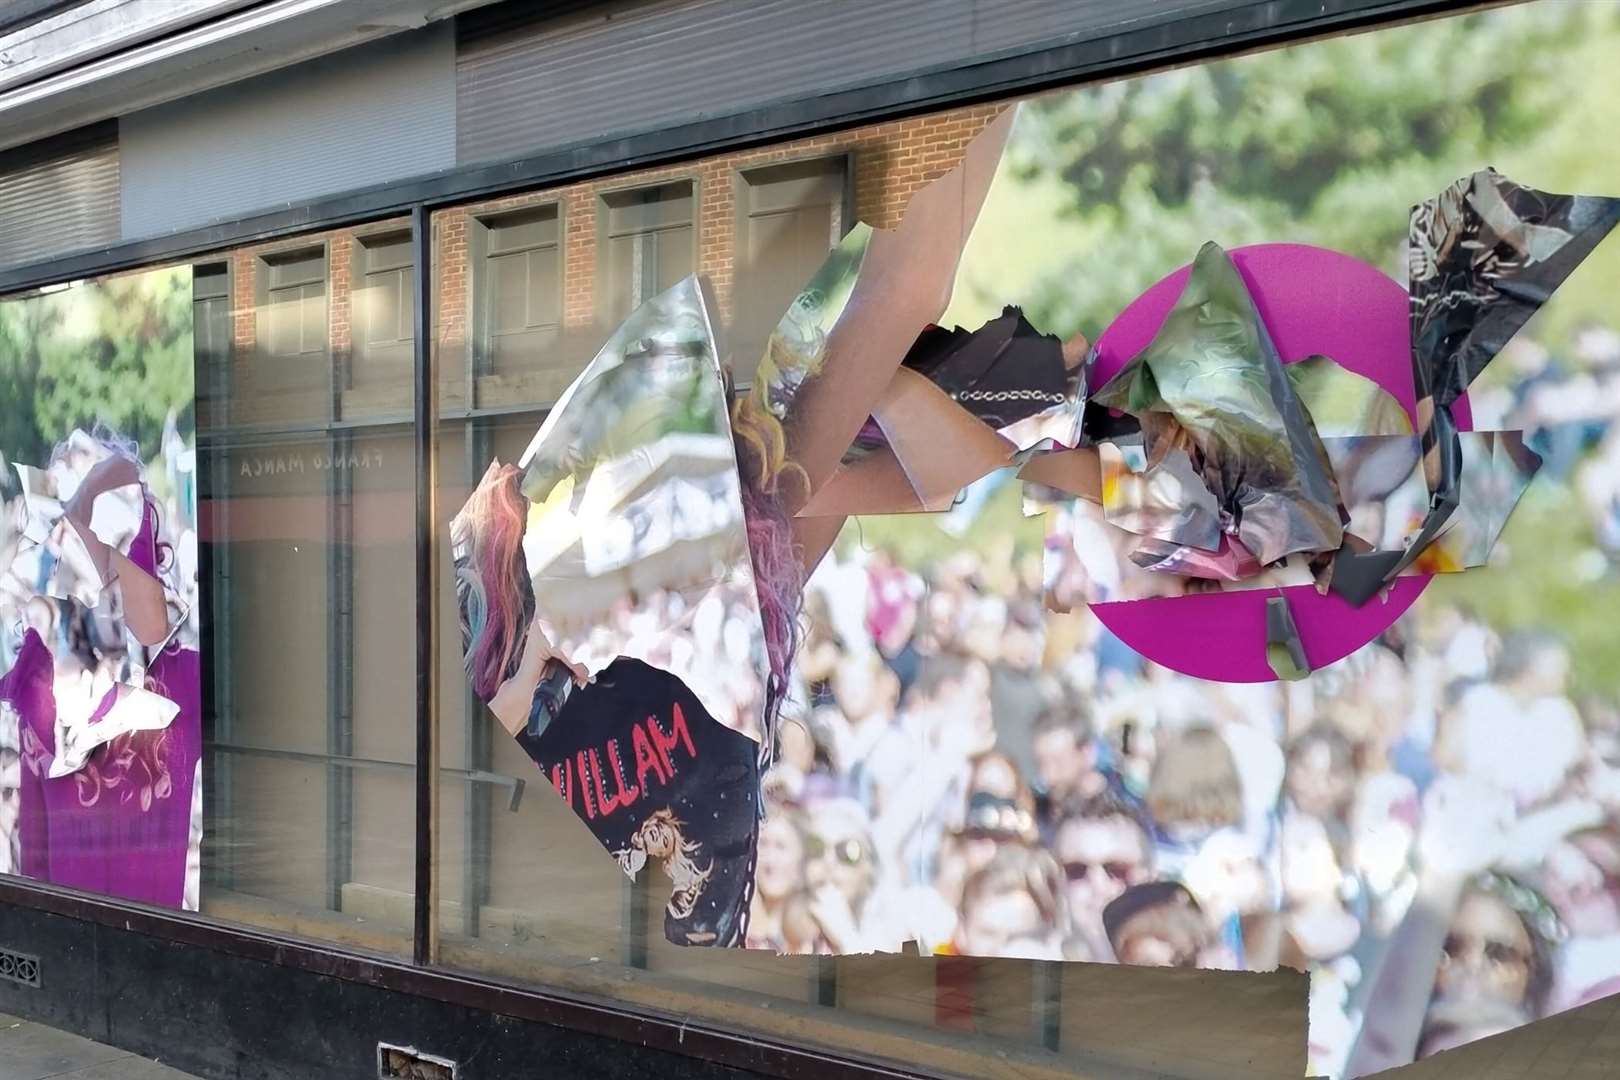 The vandalised window in Canterbury's former Debenhams store